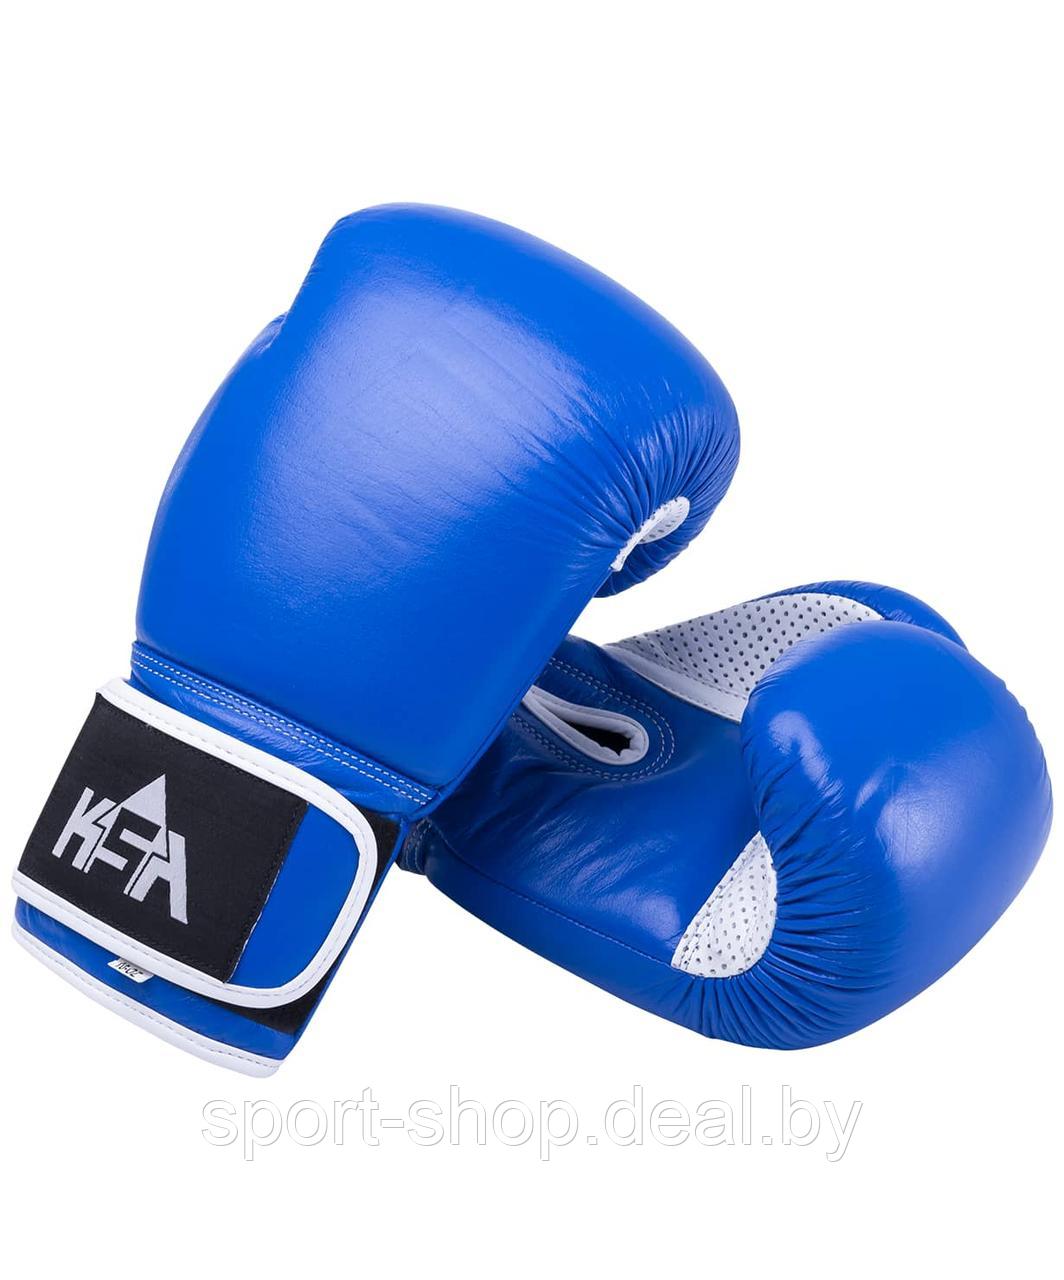 Боксерские перчатки KSA Wolf Blue Кожа (12 oz),перчатки для бокса, перчатки 12 унций, перчатки боксерские